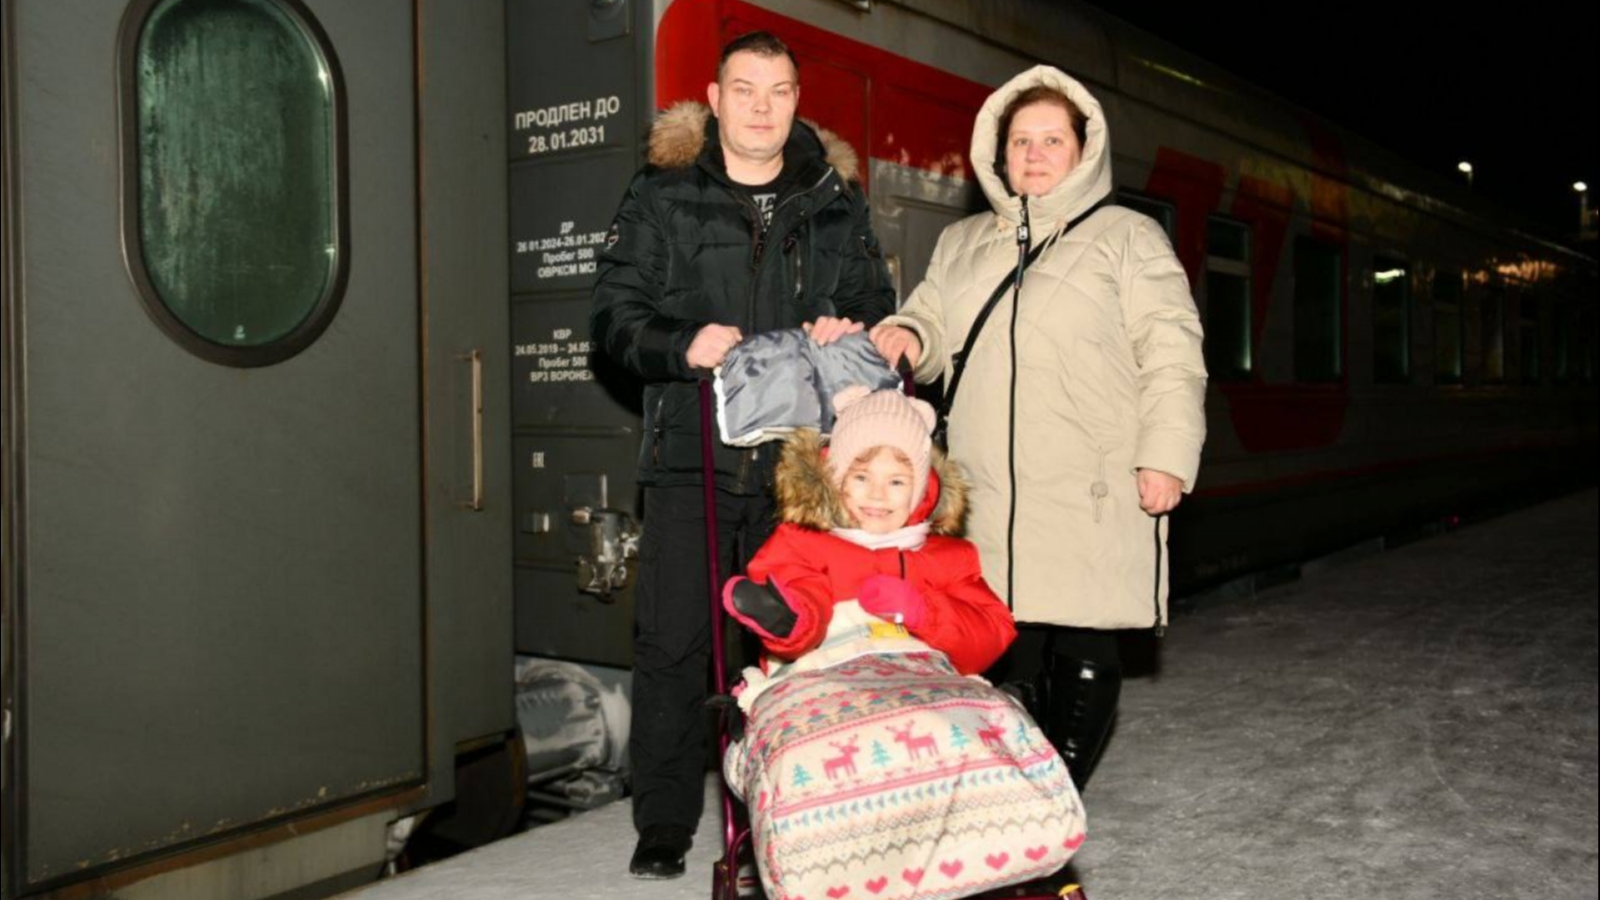 Сердечкин отправил 8-летнюю девочку к Деду Морозу